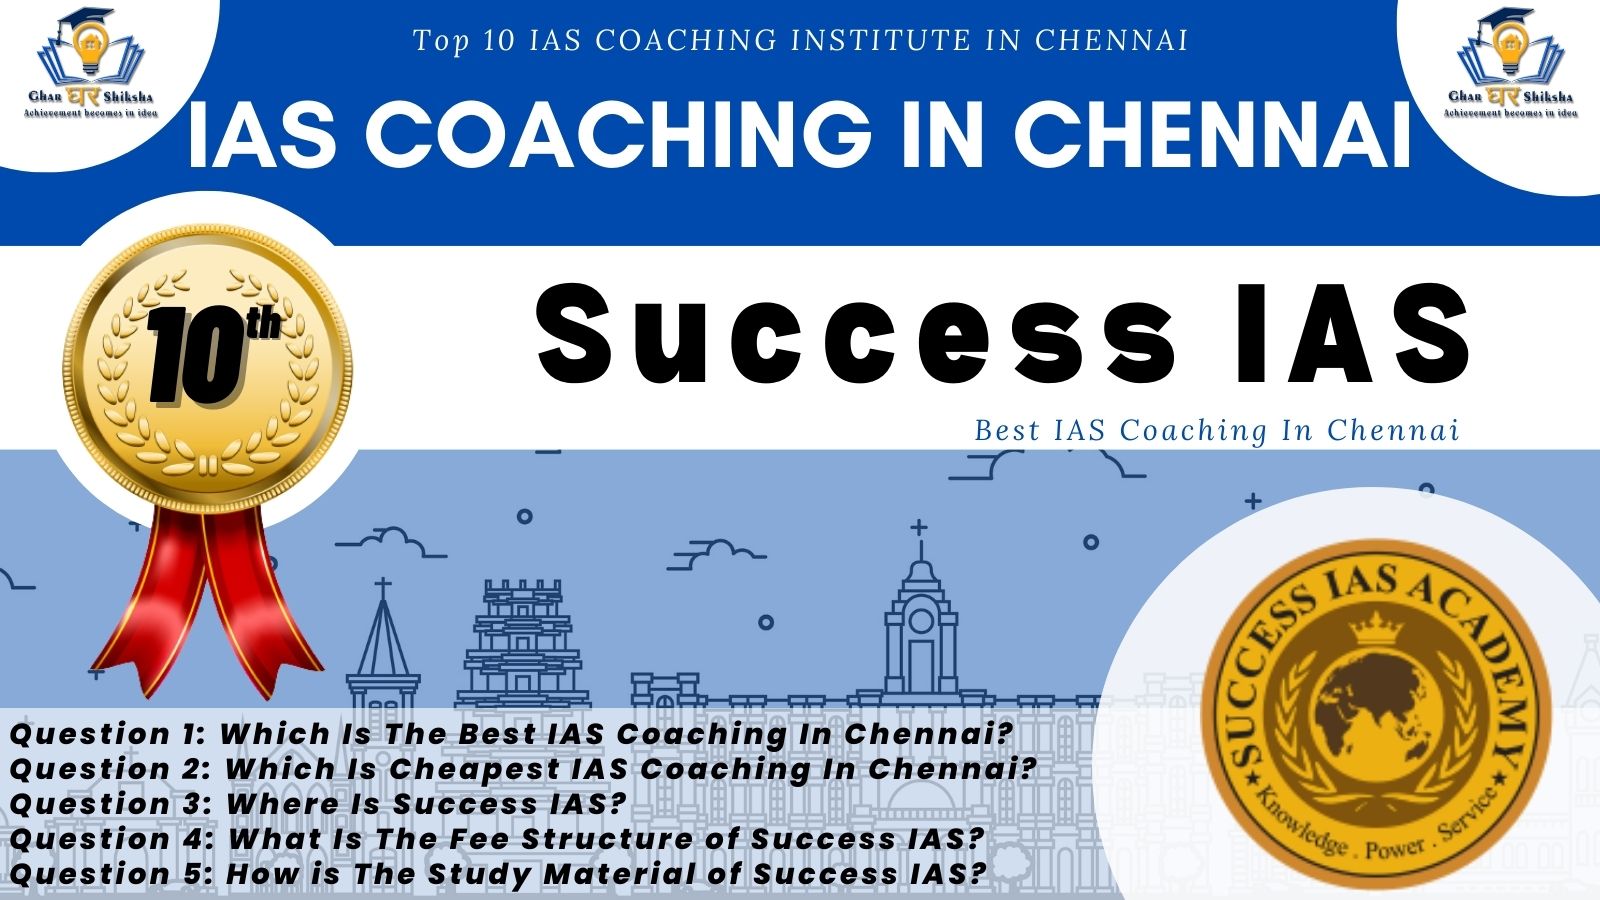 Success IAS Top IAS Coaching Institute In Chennai